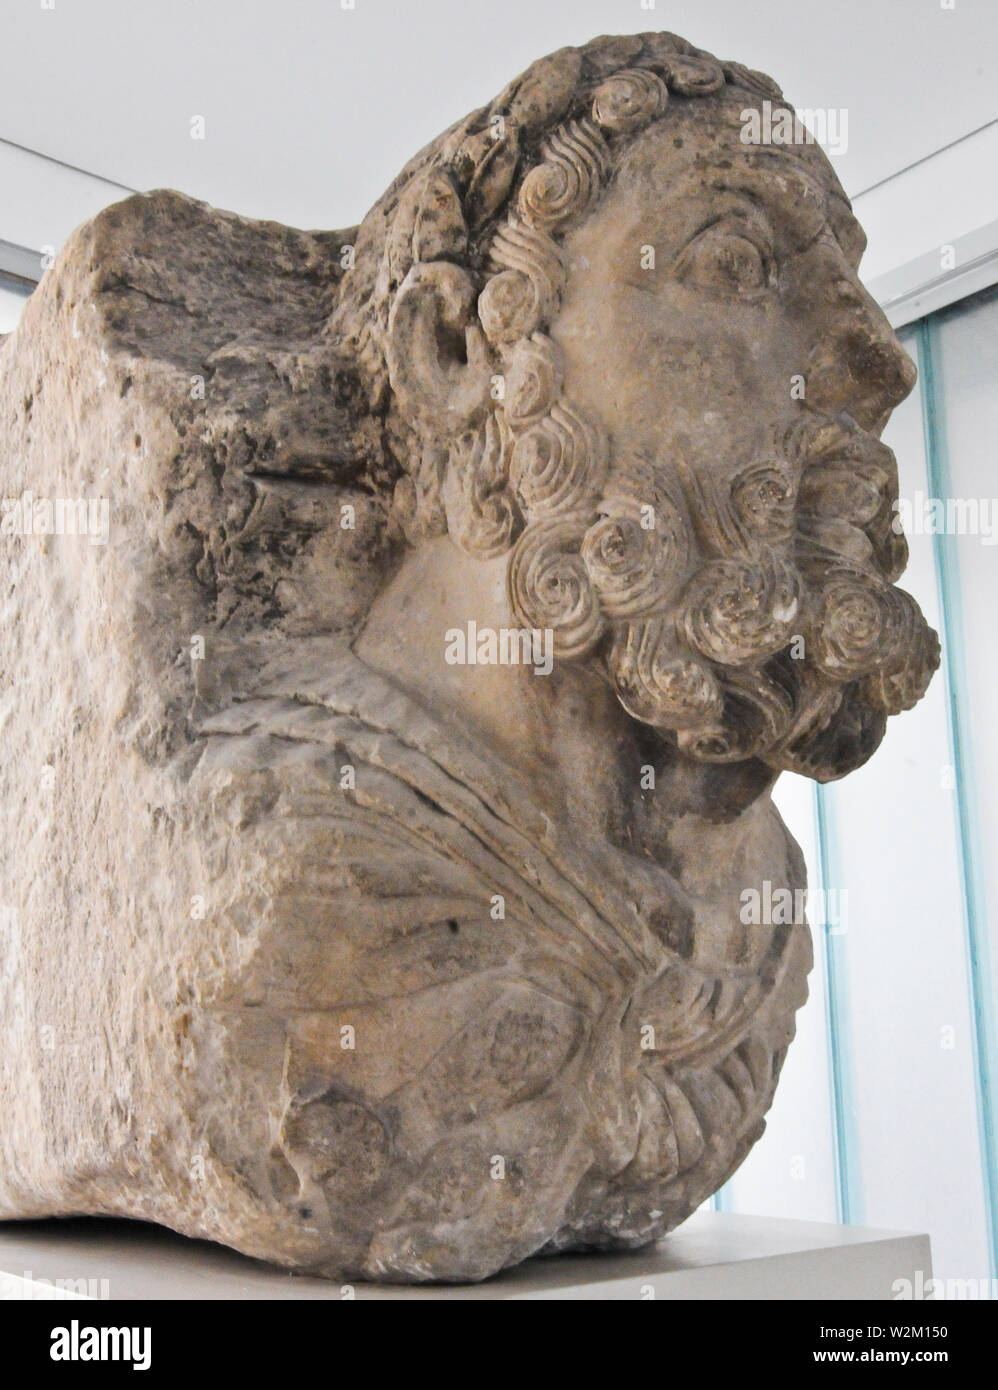 Busto del emperador Cómodo (180-192 DC) desde Burnum. Museo Arqueológico de la ciudad de Zadar. Croacia Foto de stock